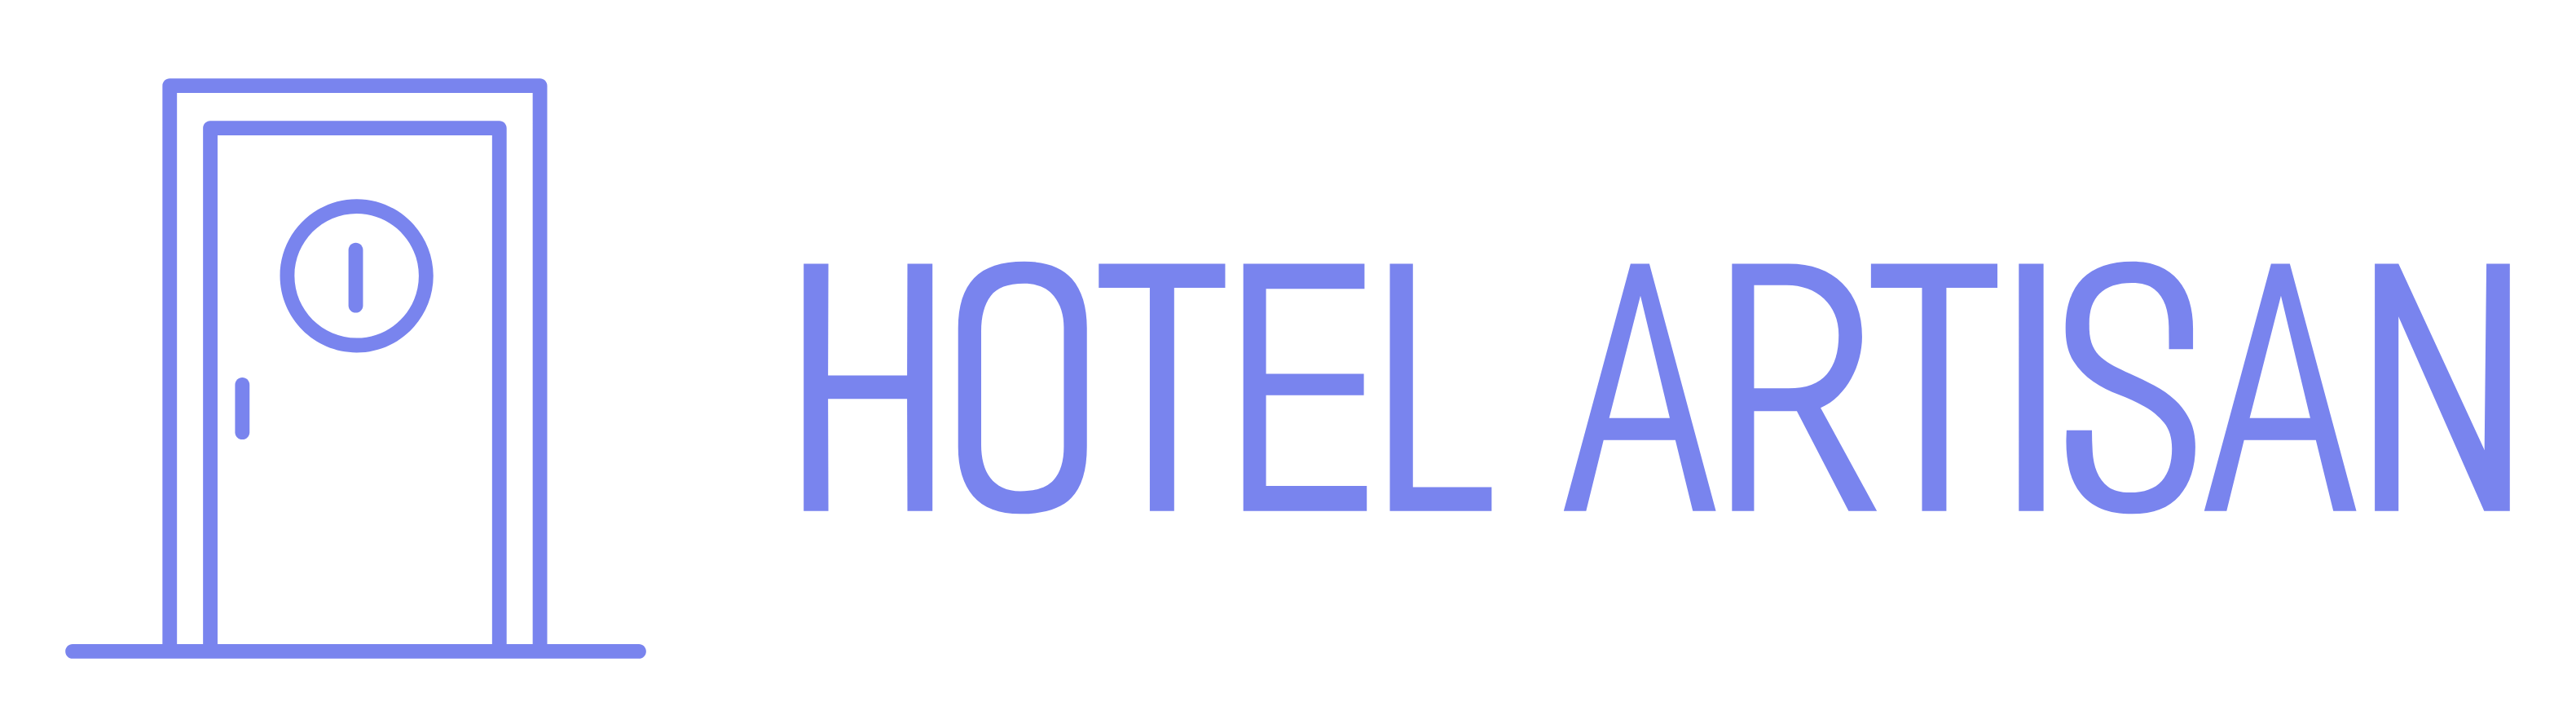 Hotel artisan